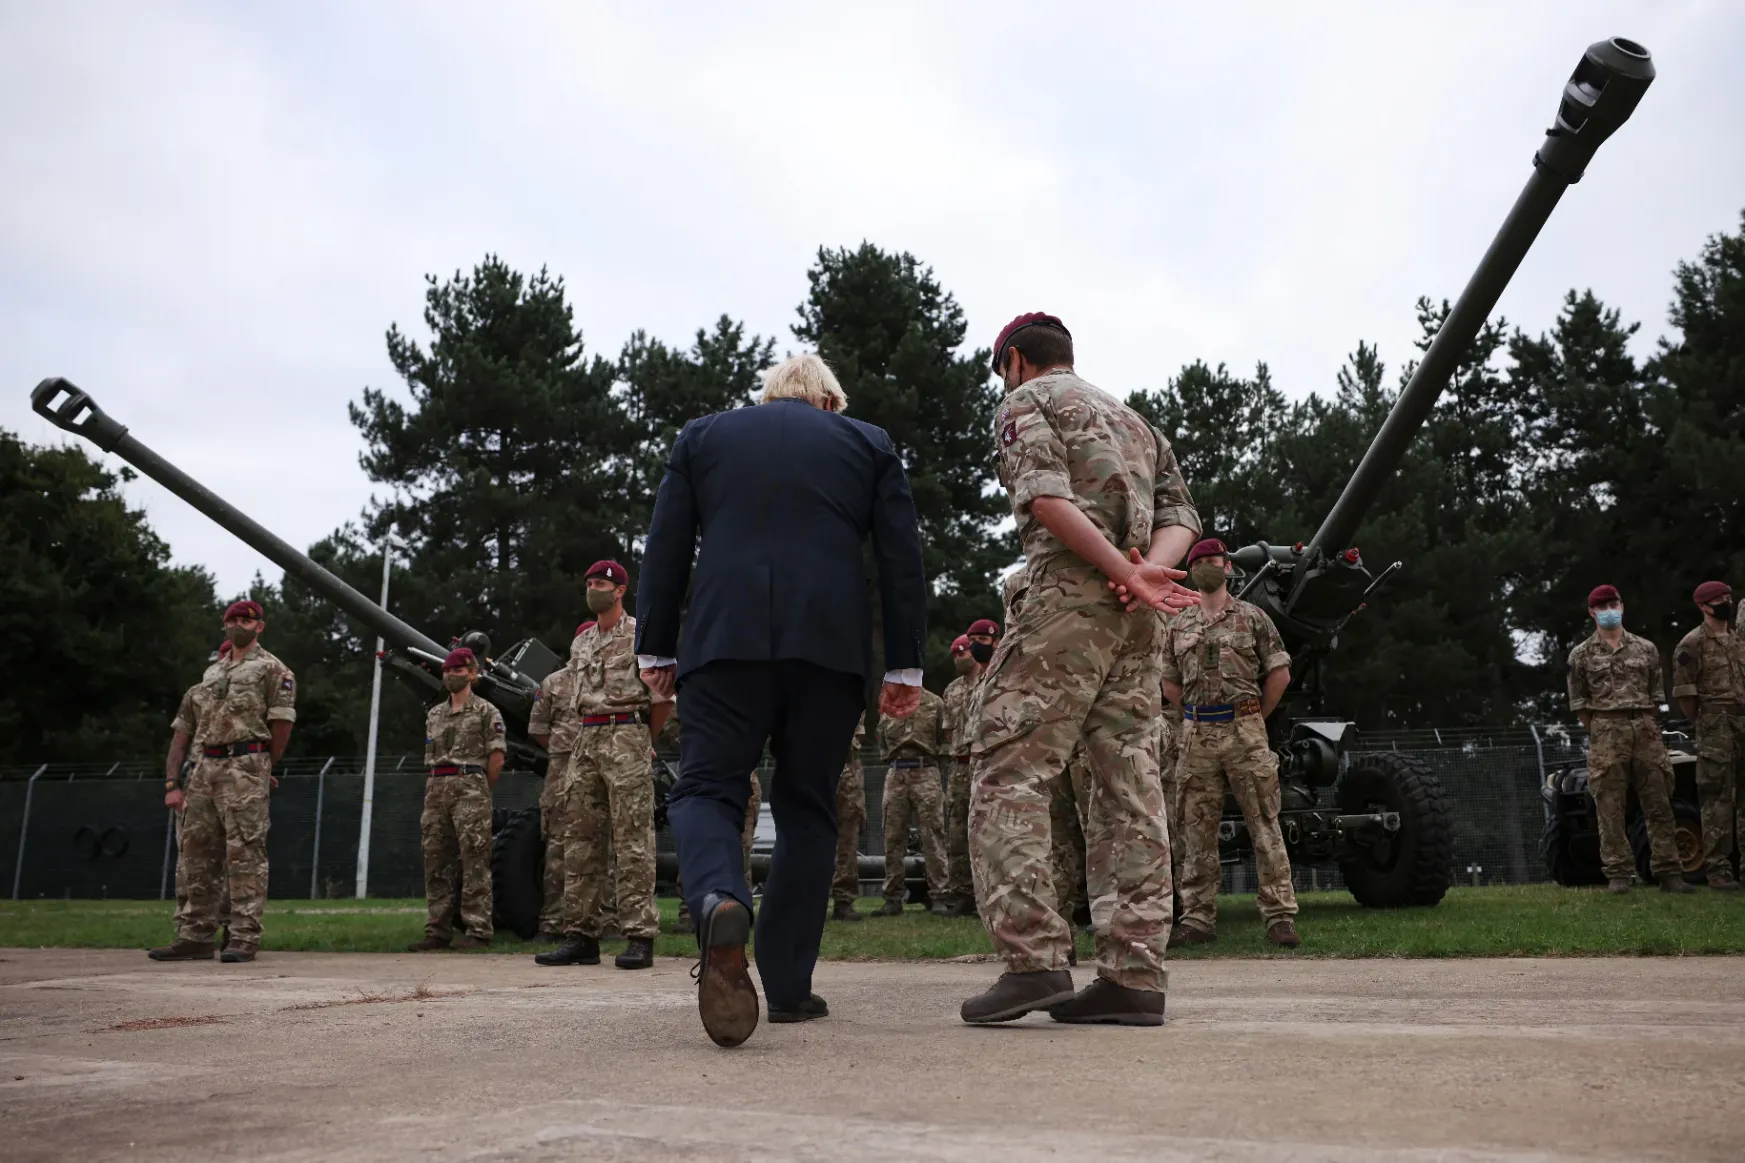 Szexorgiát tartott egy brit ejtőernyős egység, büntetésből kimaradnak egy NATO-hadgyakorlatból